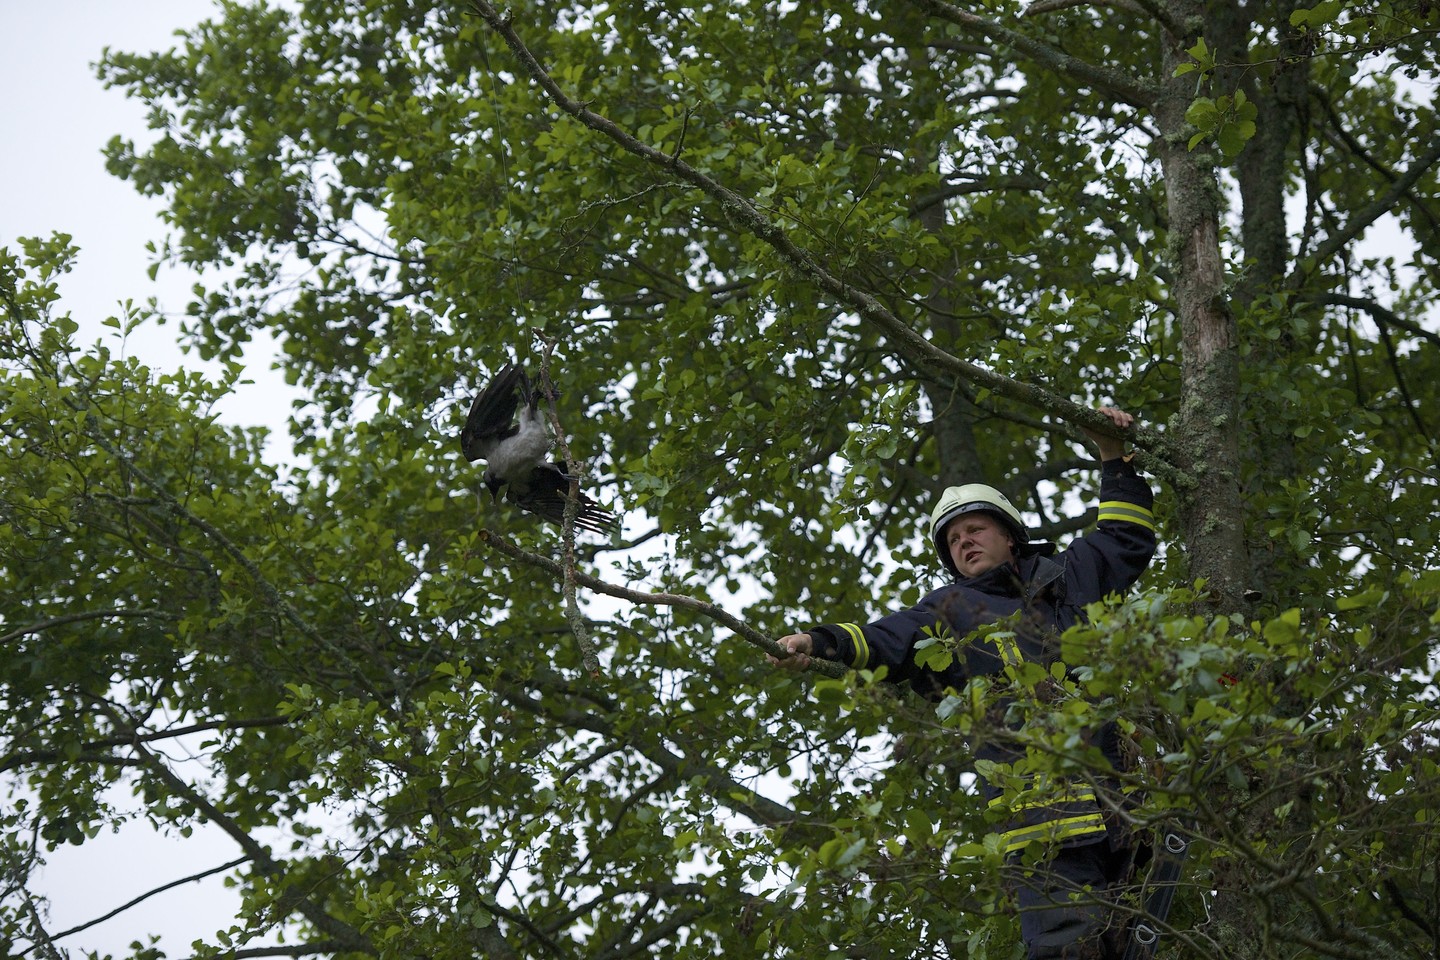  Netoli Preilos medyje pastebėta į nelaimę pakliuvusi varna. Jos iškelti išvaduoti atvyko net trys ugniagesiai-gelbėtojai.<br> R. Anusausko asmeninio archyvo nuotr.